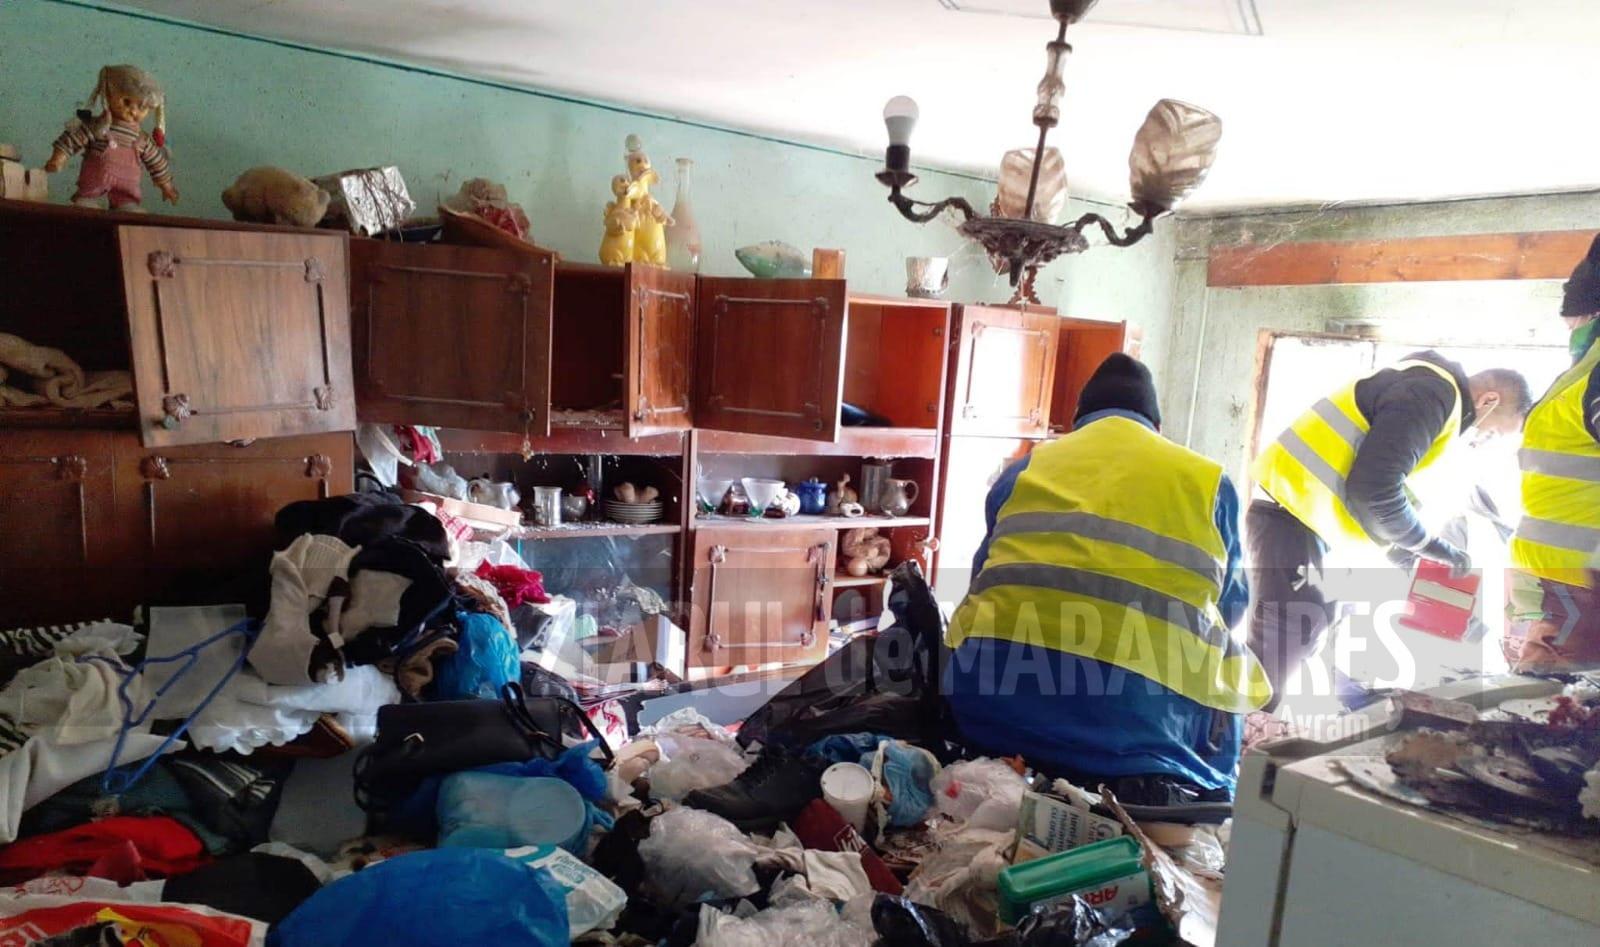 BM. Apartament insalubru pe Grănicerilor, curățat de autoritățile locale. Proprietara a fost transportată la spital